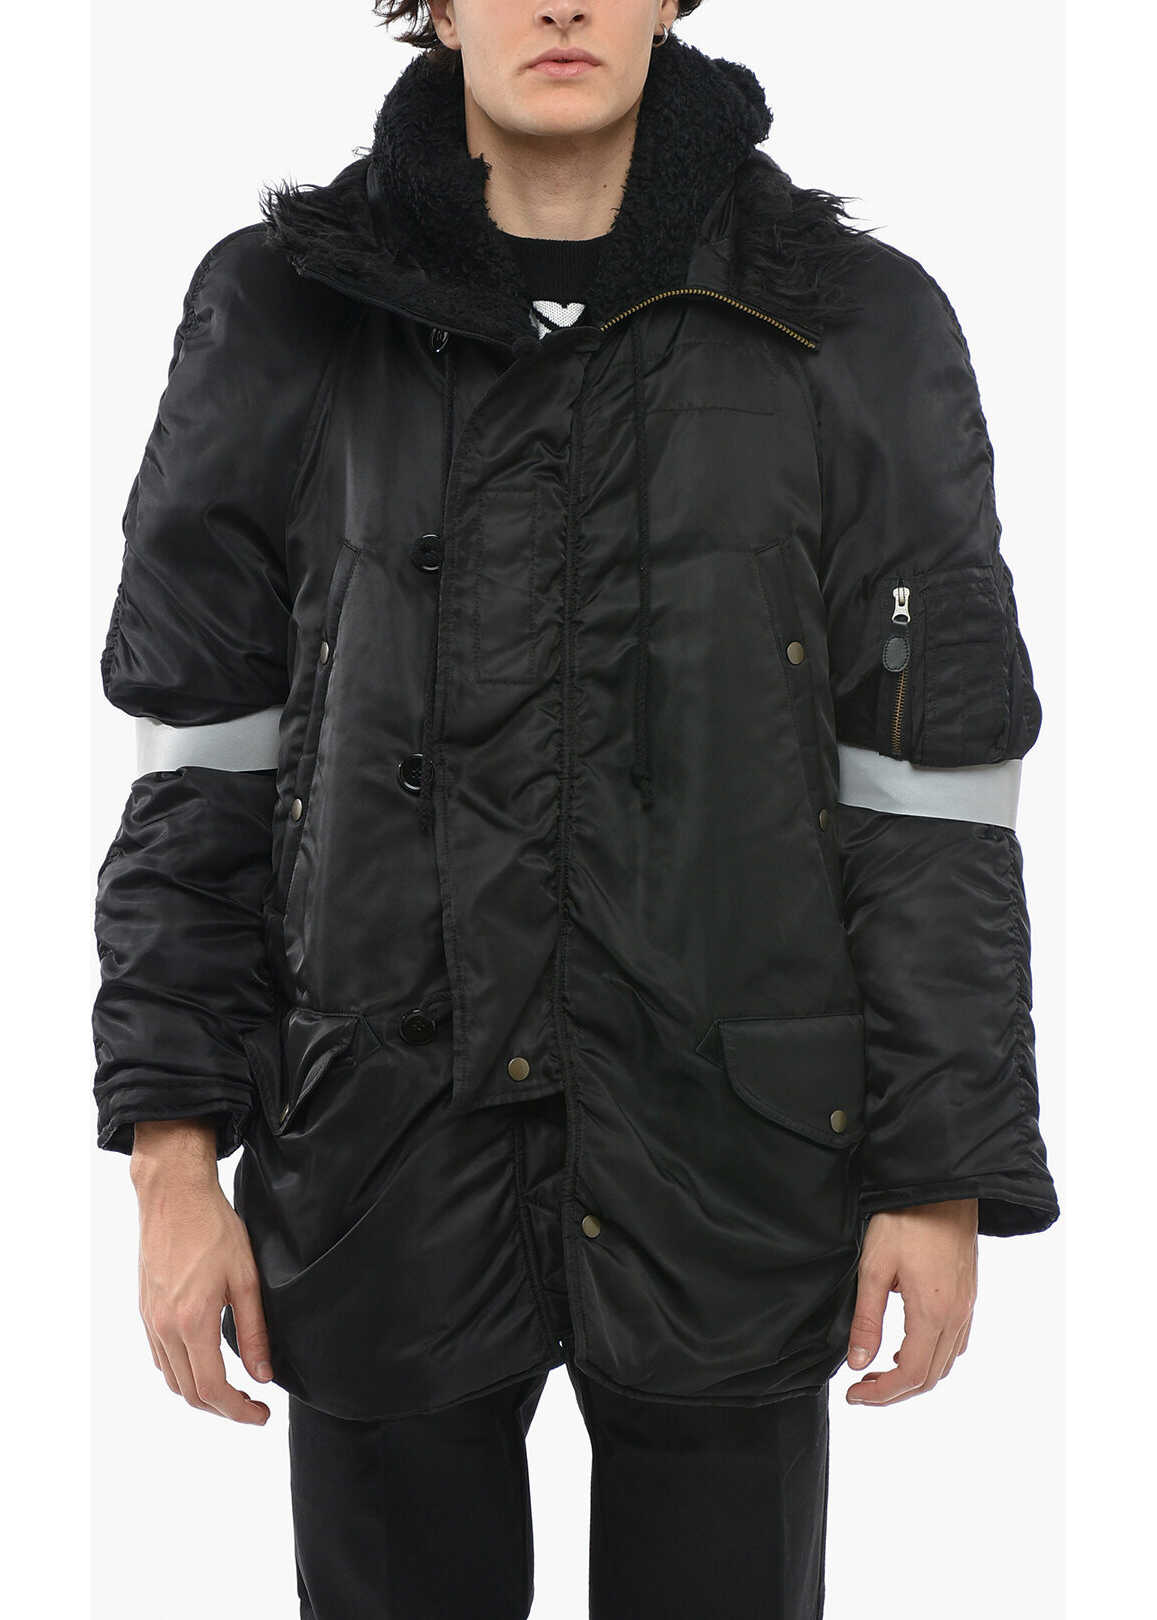 Maison Margiela Mm6 Multipocketed Padded Jacket With Iridishent Details Black